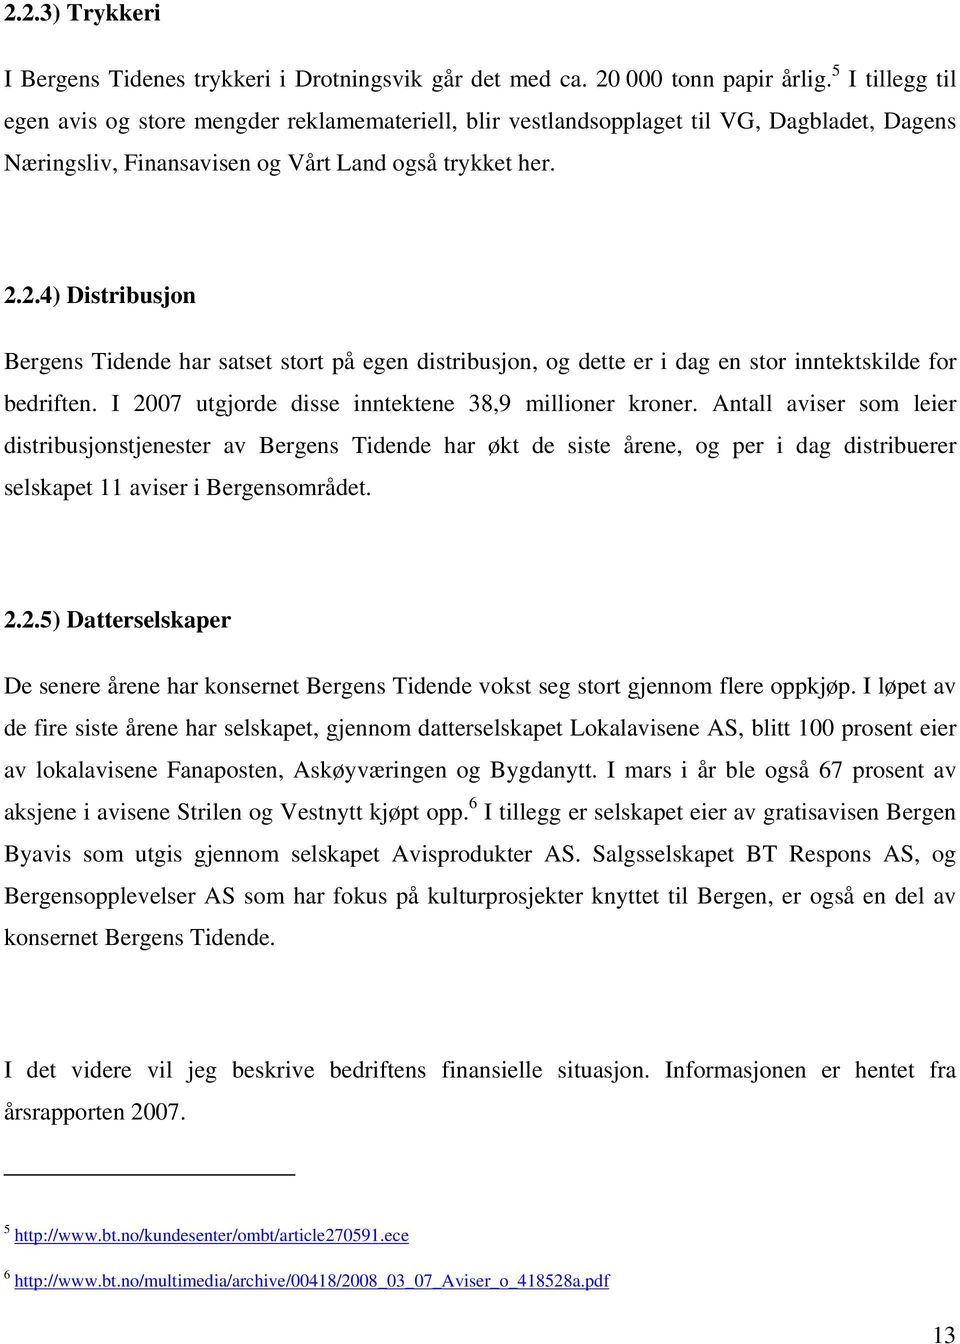 2.4) Distribusjon Bergens Tidende har satset stort på egen distribusjon, og dette er i dag en stor inntektskilde for bedriften. I 2007 utgjorde disse inntektene 38,9 millioner kroner.